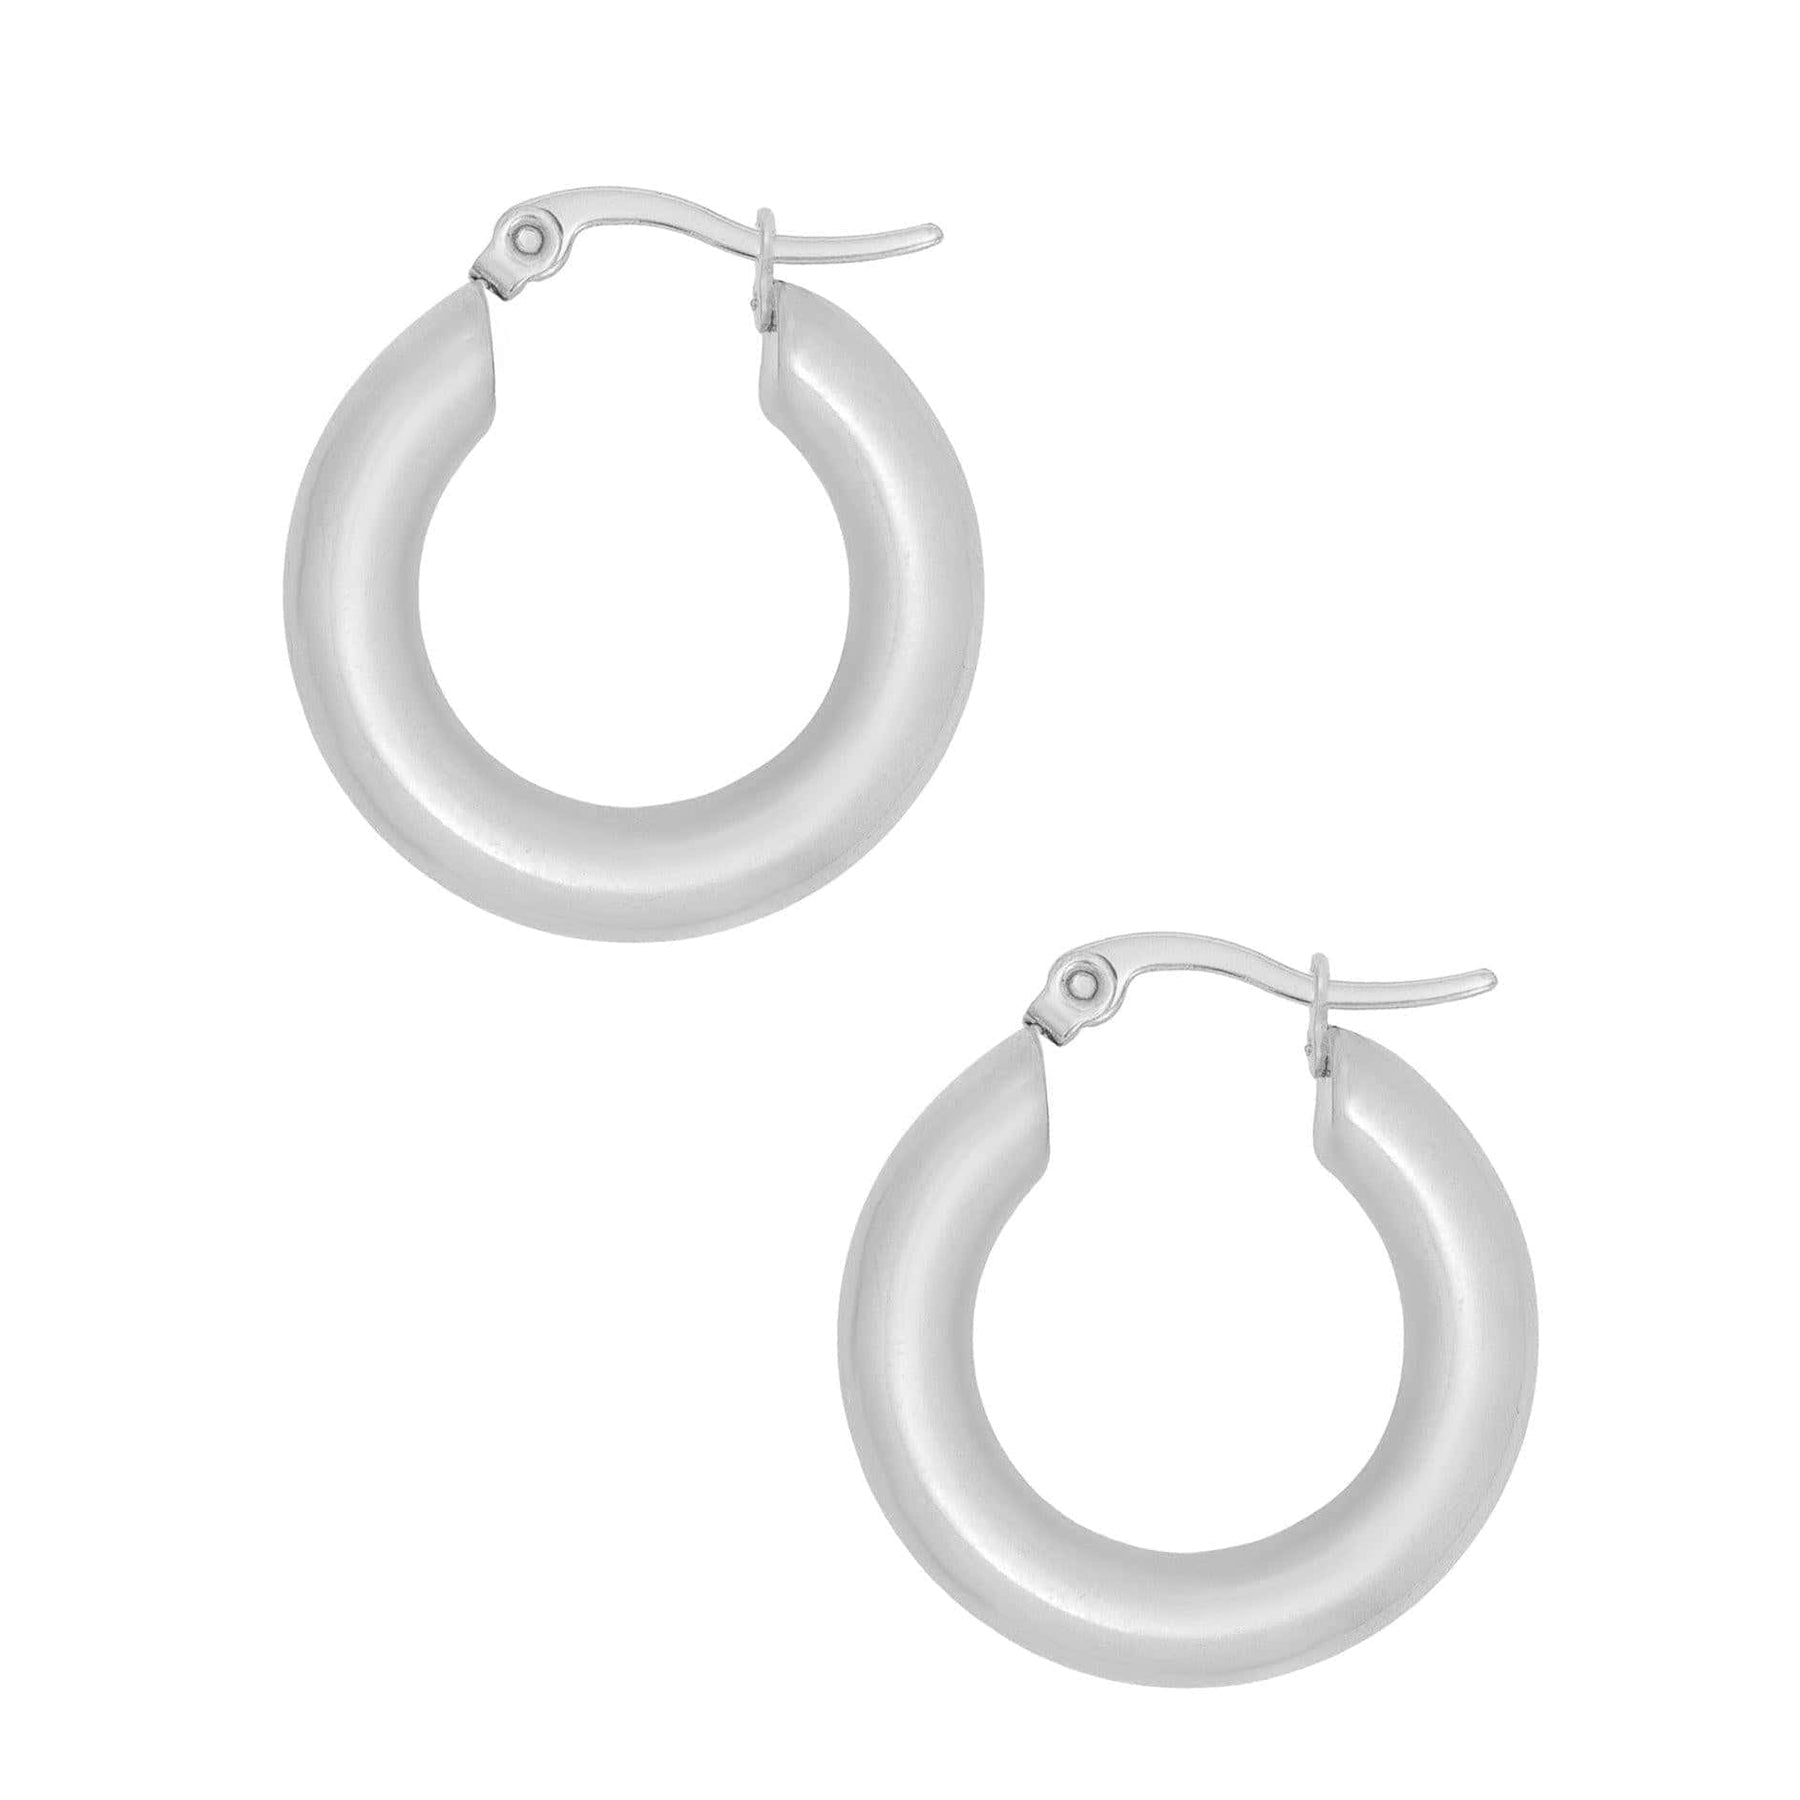 BOHOMOON Stainless Steel Mykonos Hoop Earrings Silver / Small